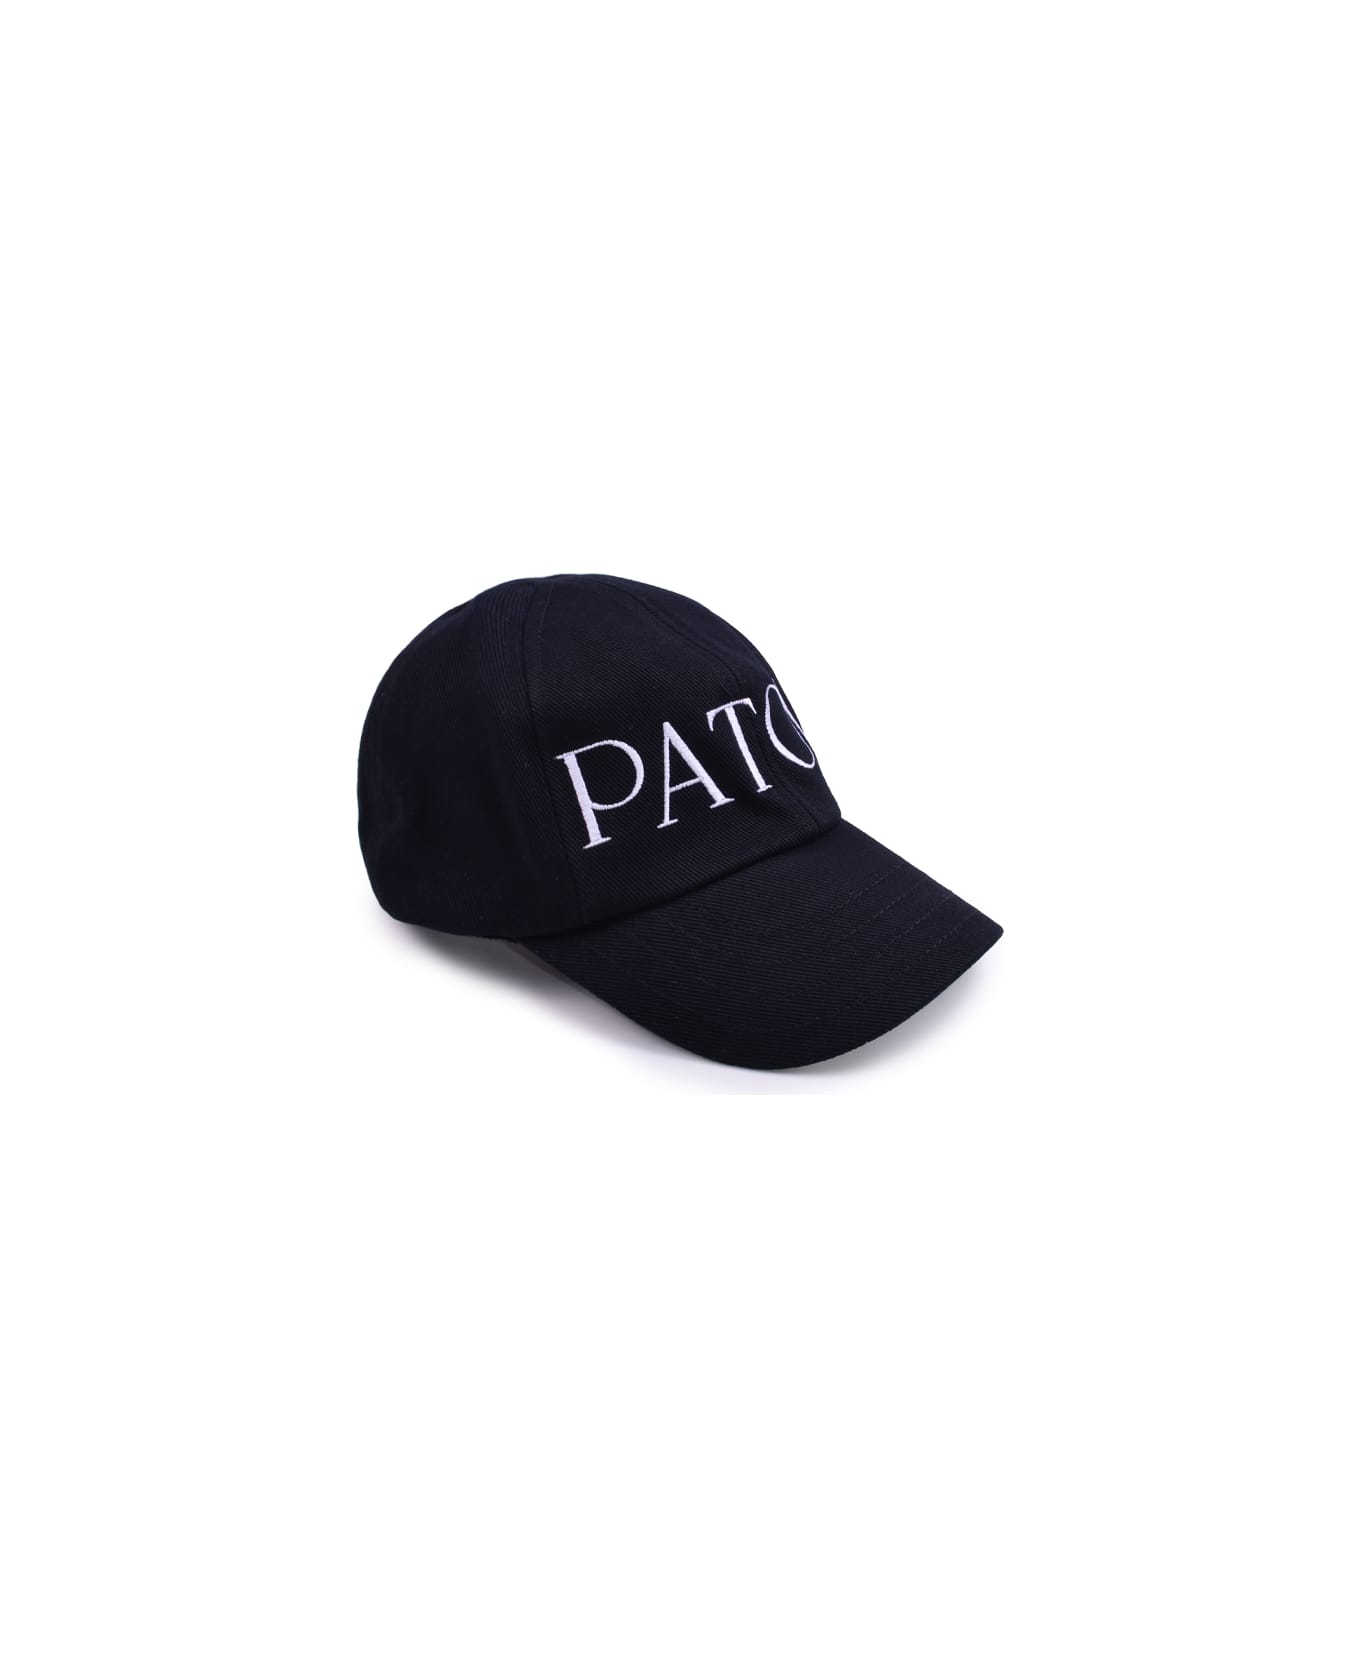 Patou Cotton Hat - B Black